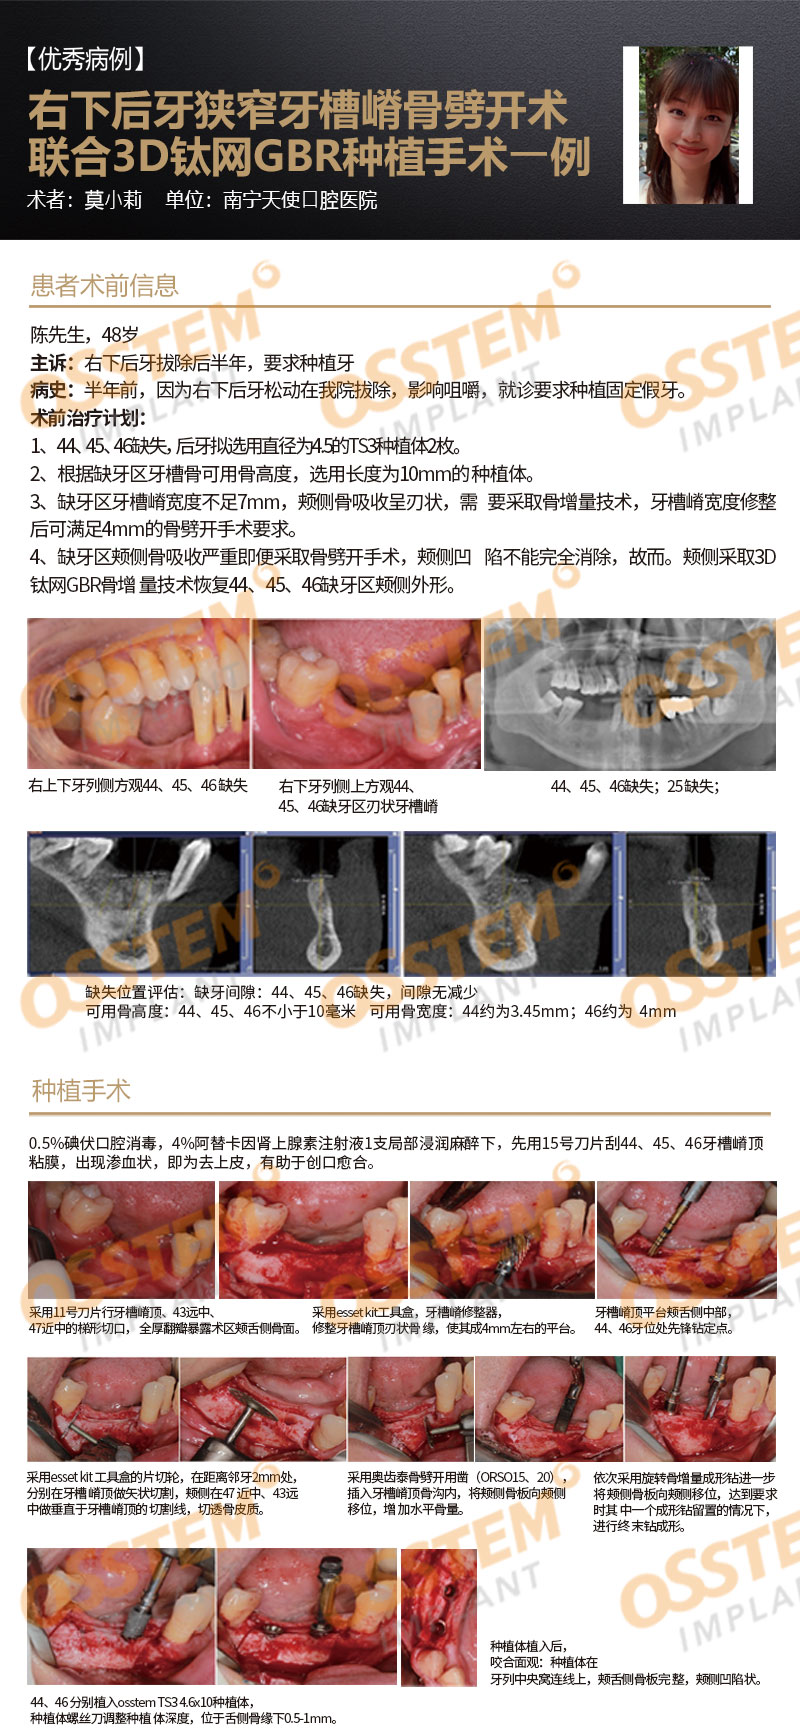 【优秀病例】右下后牙狭窄牙槽嵴⻣劈开术联合3D钛网GBR种植手术1例-Dr_01.jpg